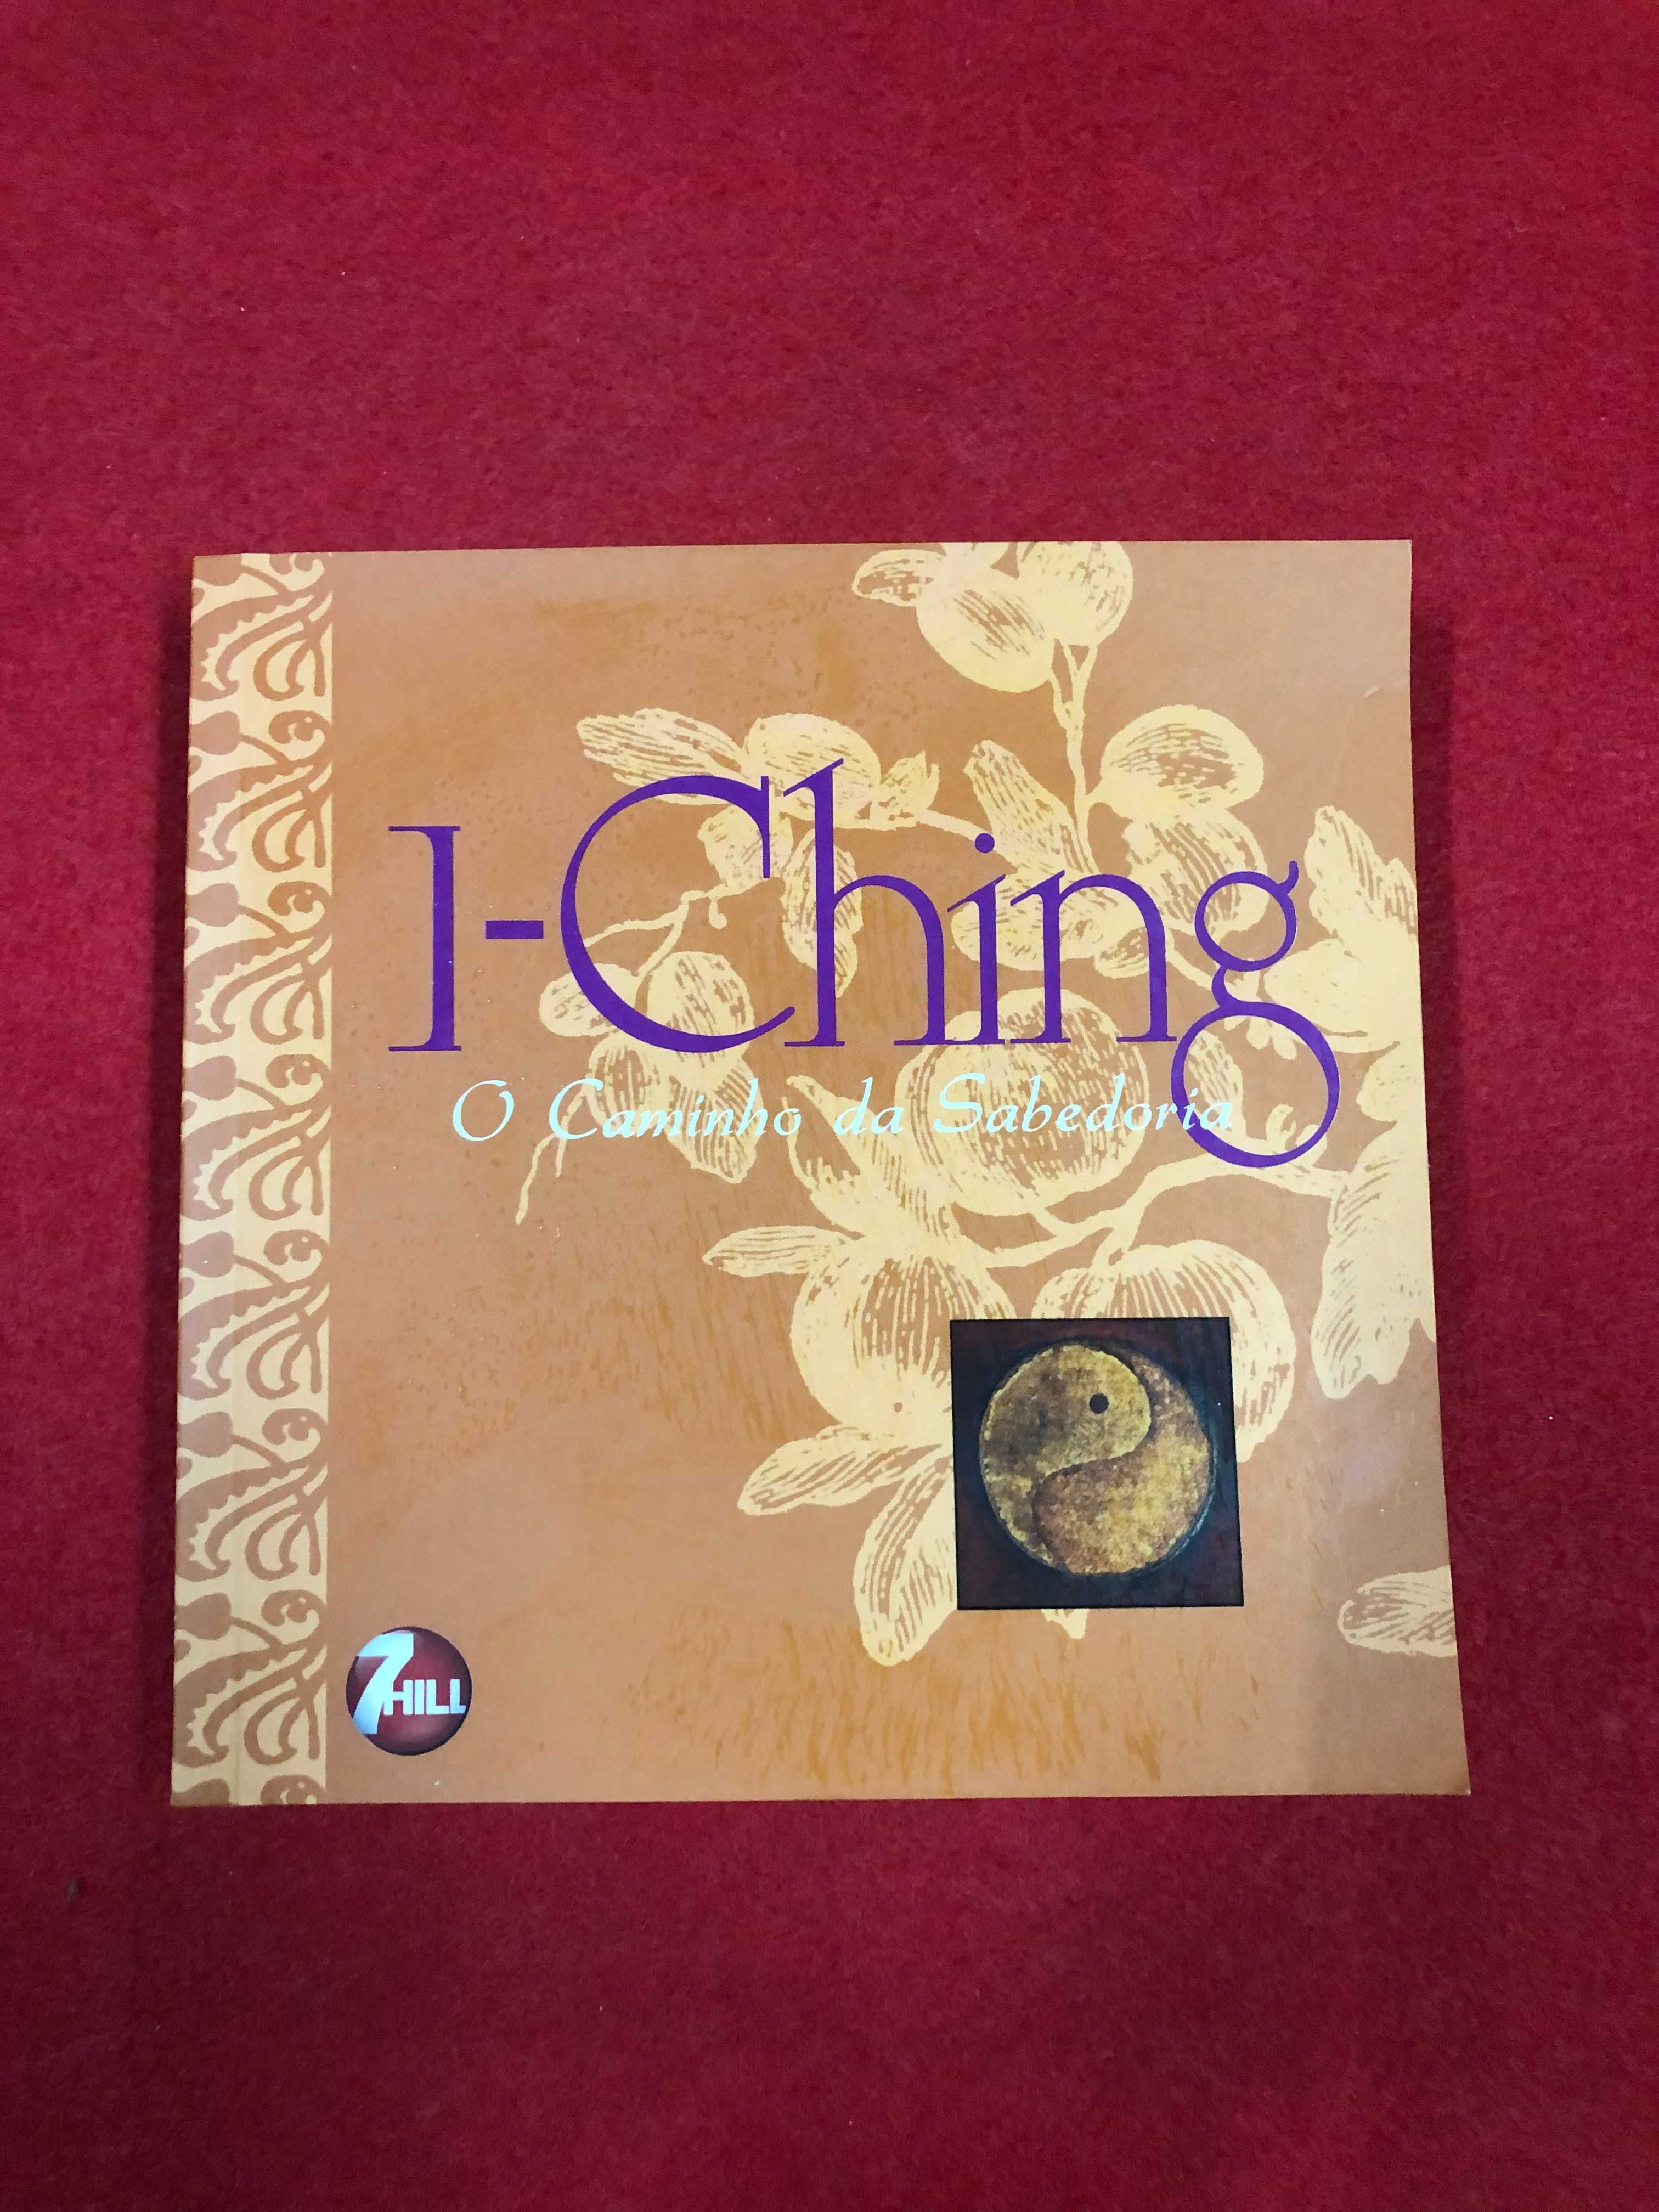 I-Ching, o caminho da sabedoria - Gary G.Melyan, Wen-kuang Chu